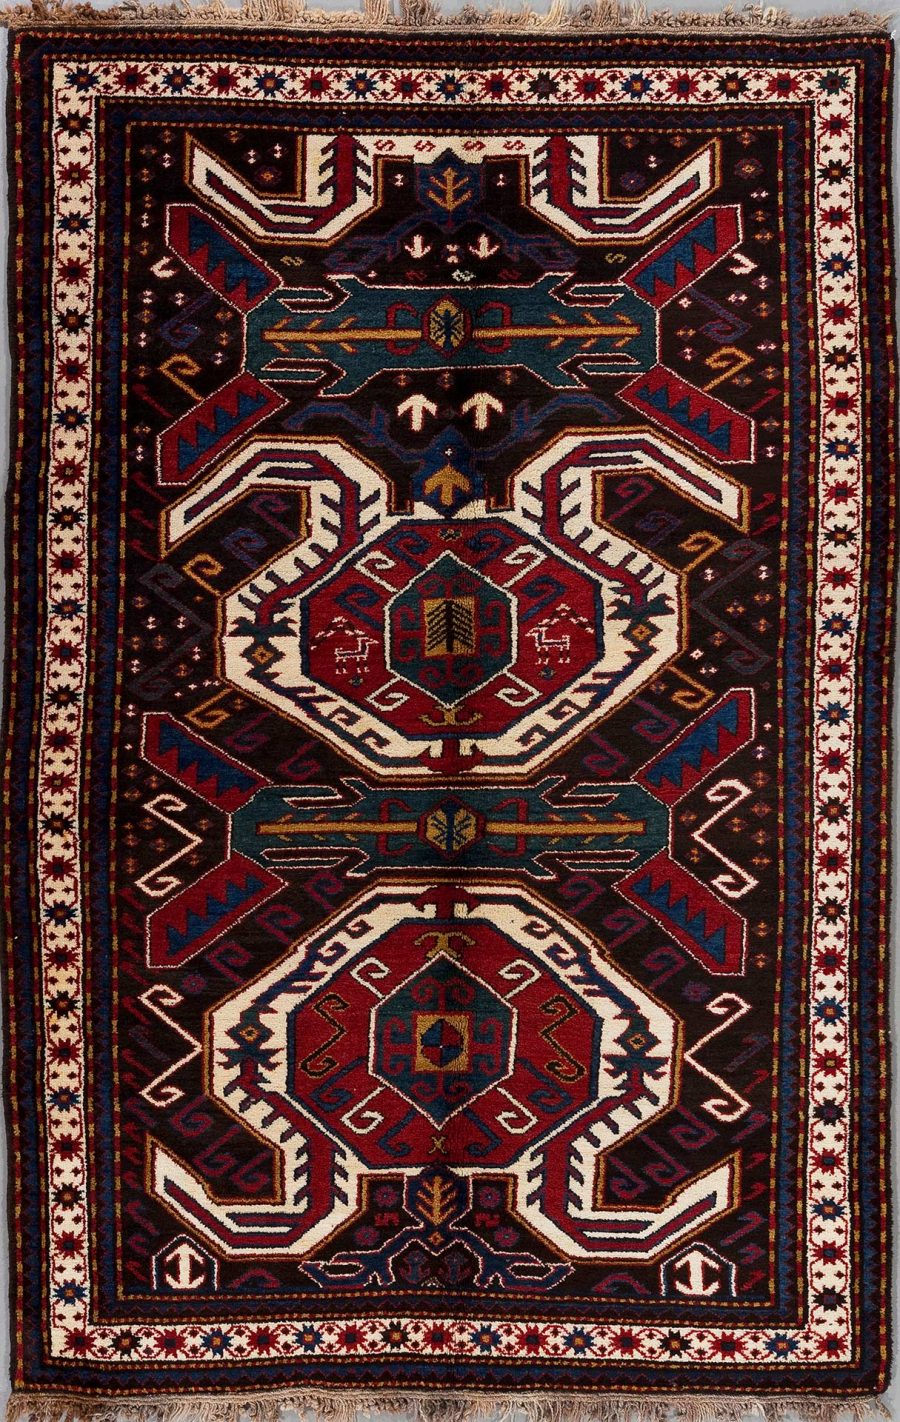 Detailreich gewebter orientalischer Teppich mit symmetrischem Design und einer Kombination aus dunkelblauen, roten und cremefarbenen Mustern, umrandet von einem schmalen, dekorativen Rand.